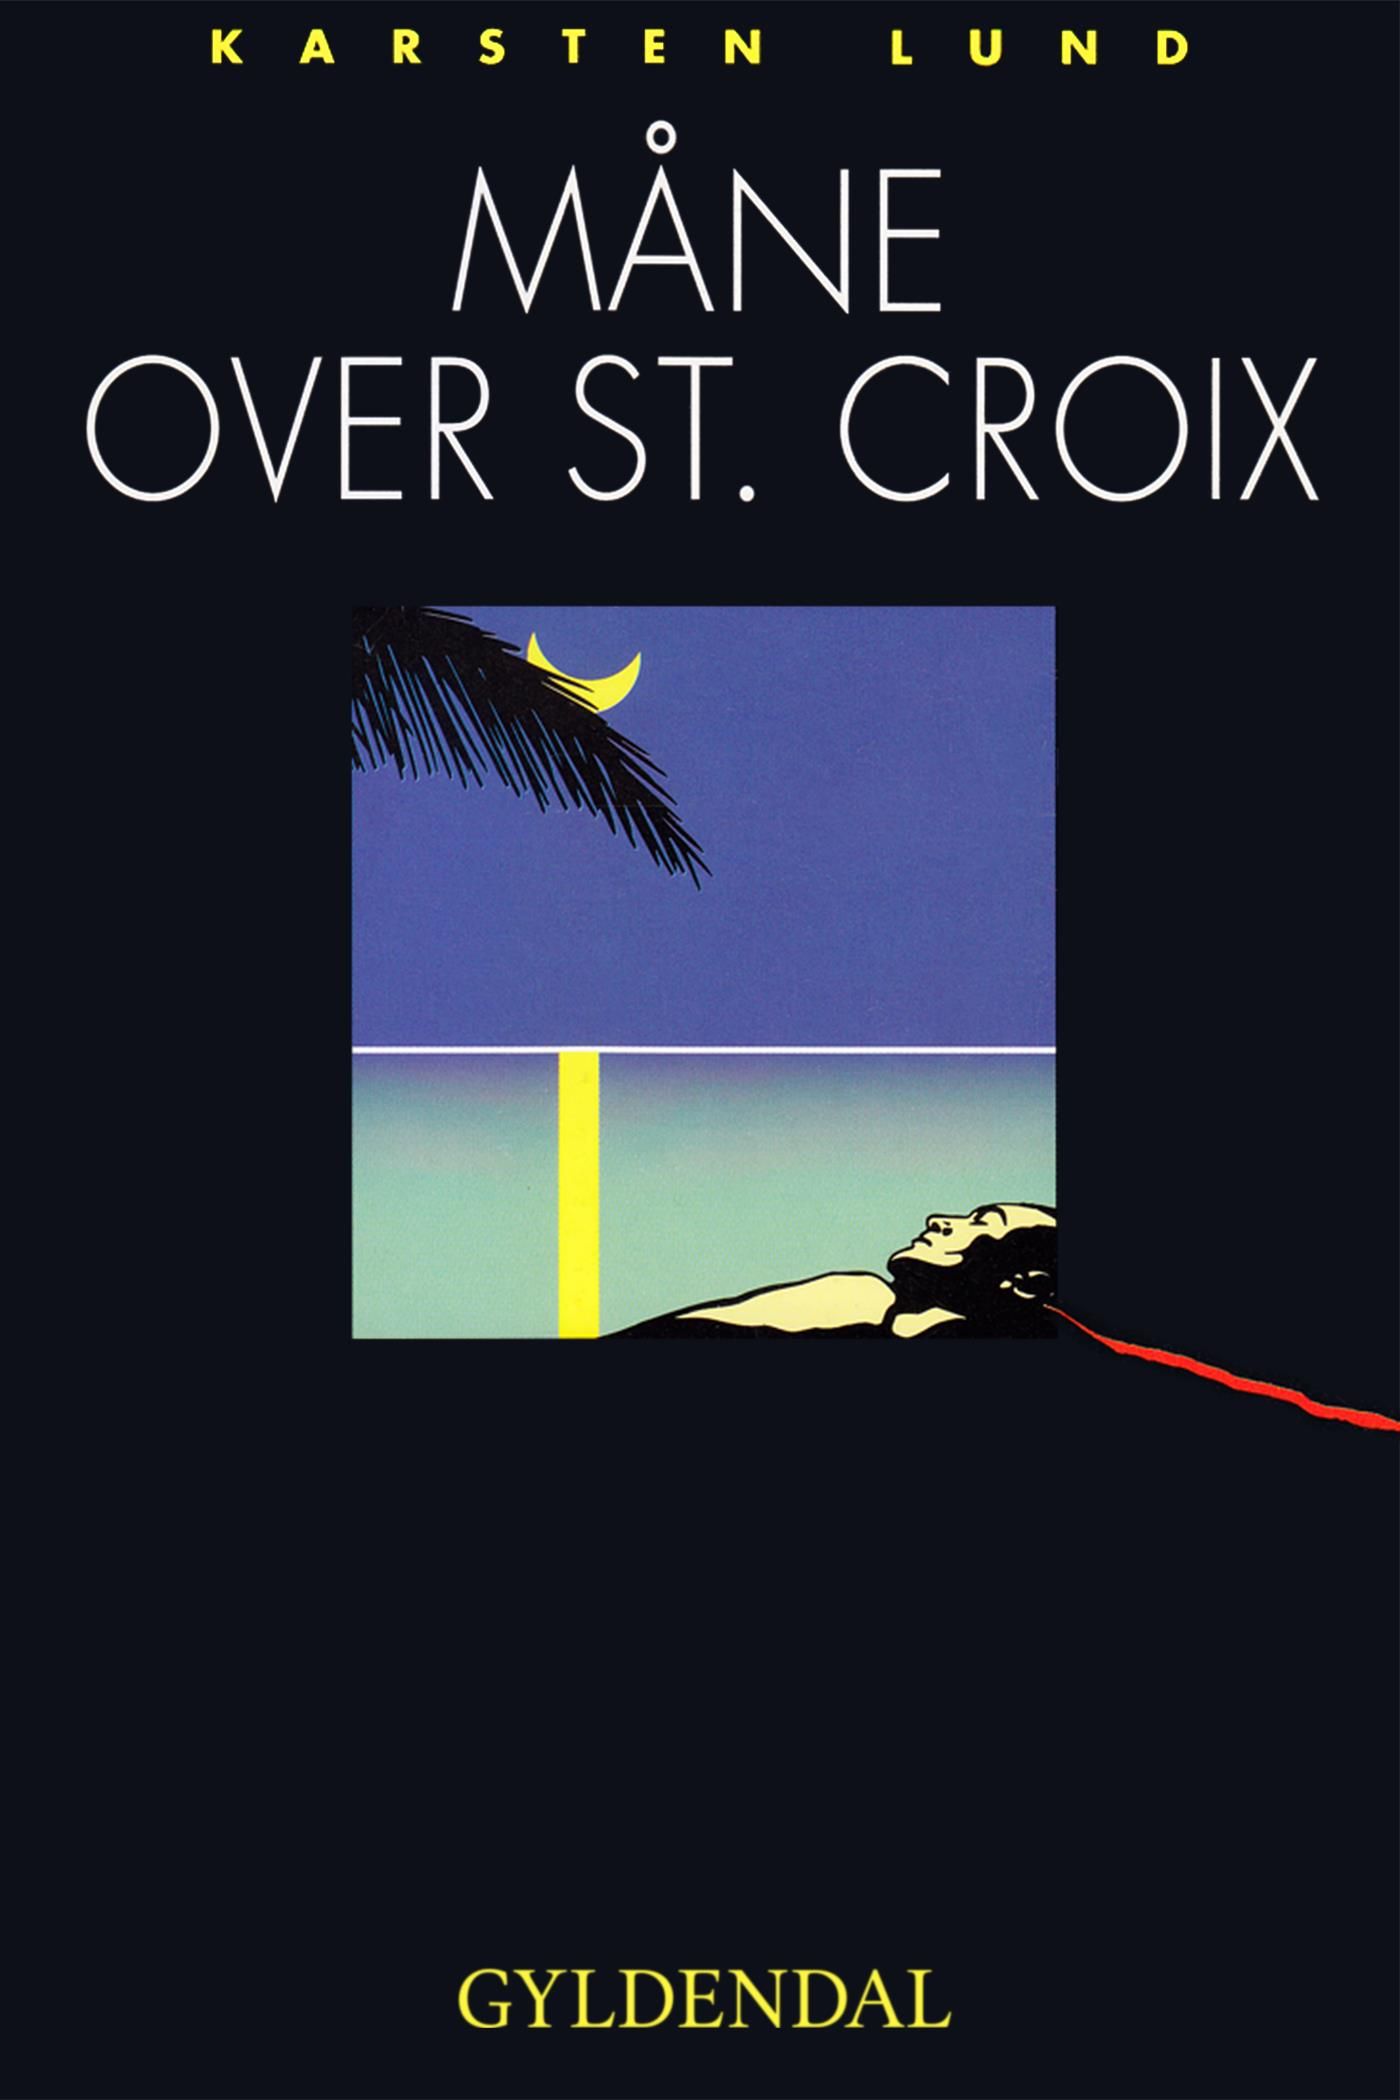 Måne over st. Croix, eBook by Karsten Lund